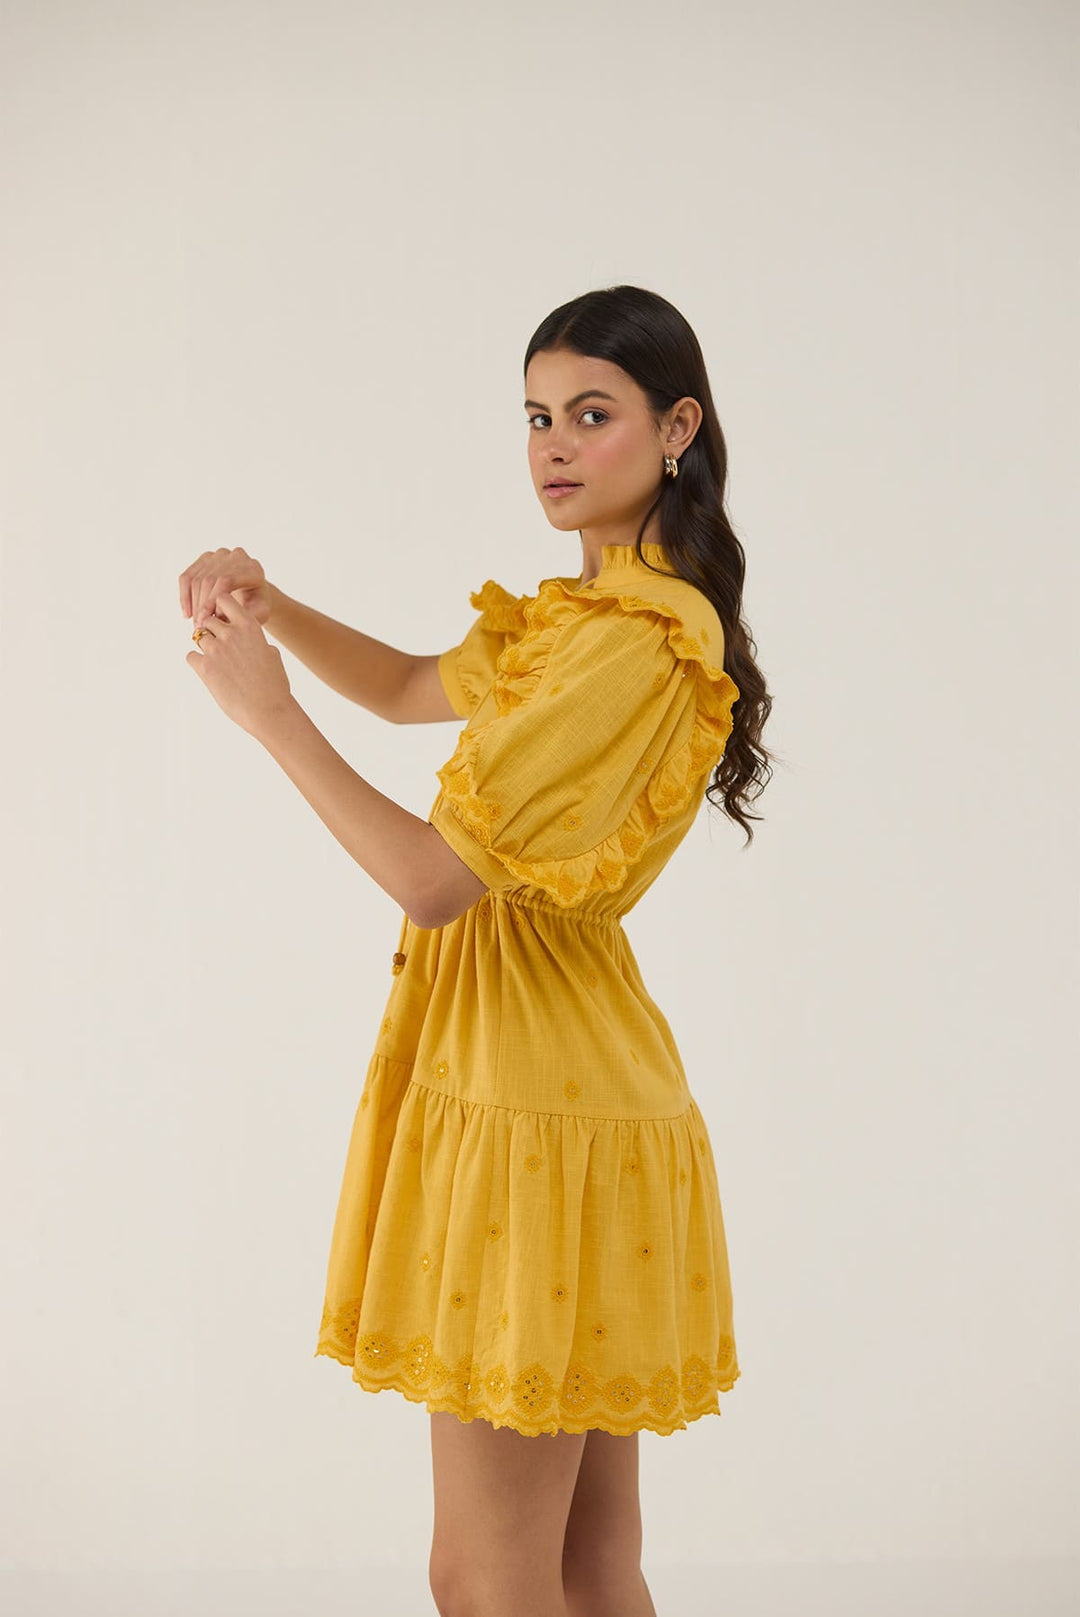 Mochi Dress Yellow